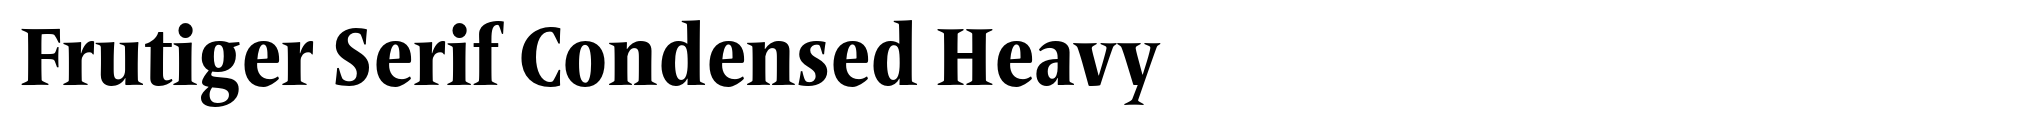 Frutiger Serif Condensed Heavy image